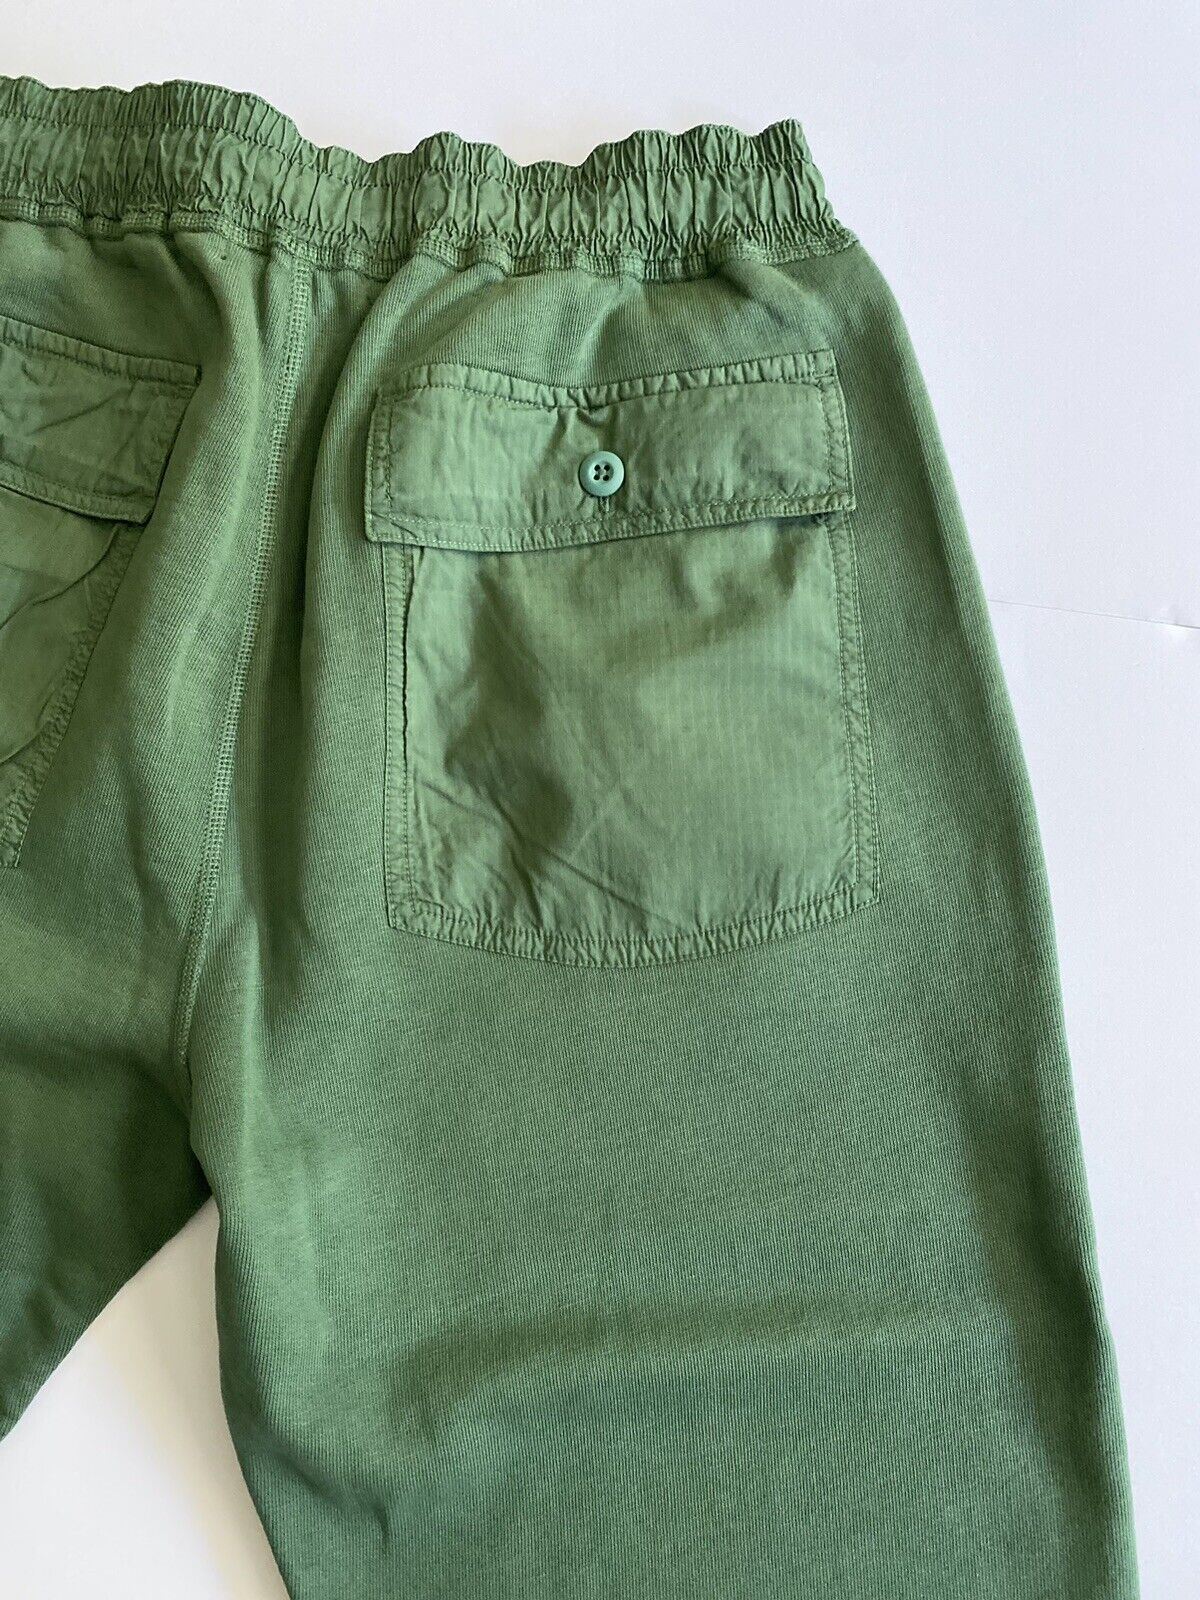 Мужские современные зеленые повседневные брюки Polo Ralph Lauren, размер XL, NWT $168